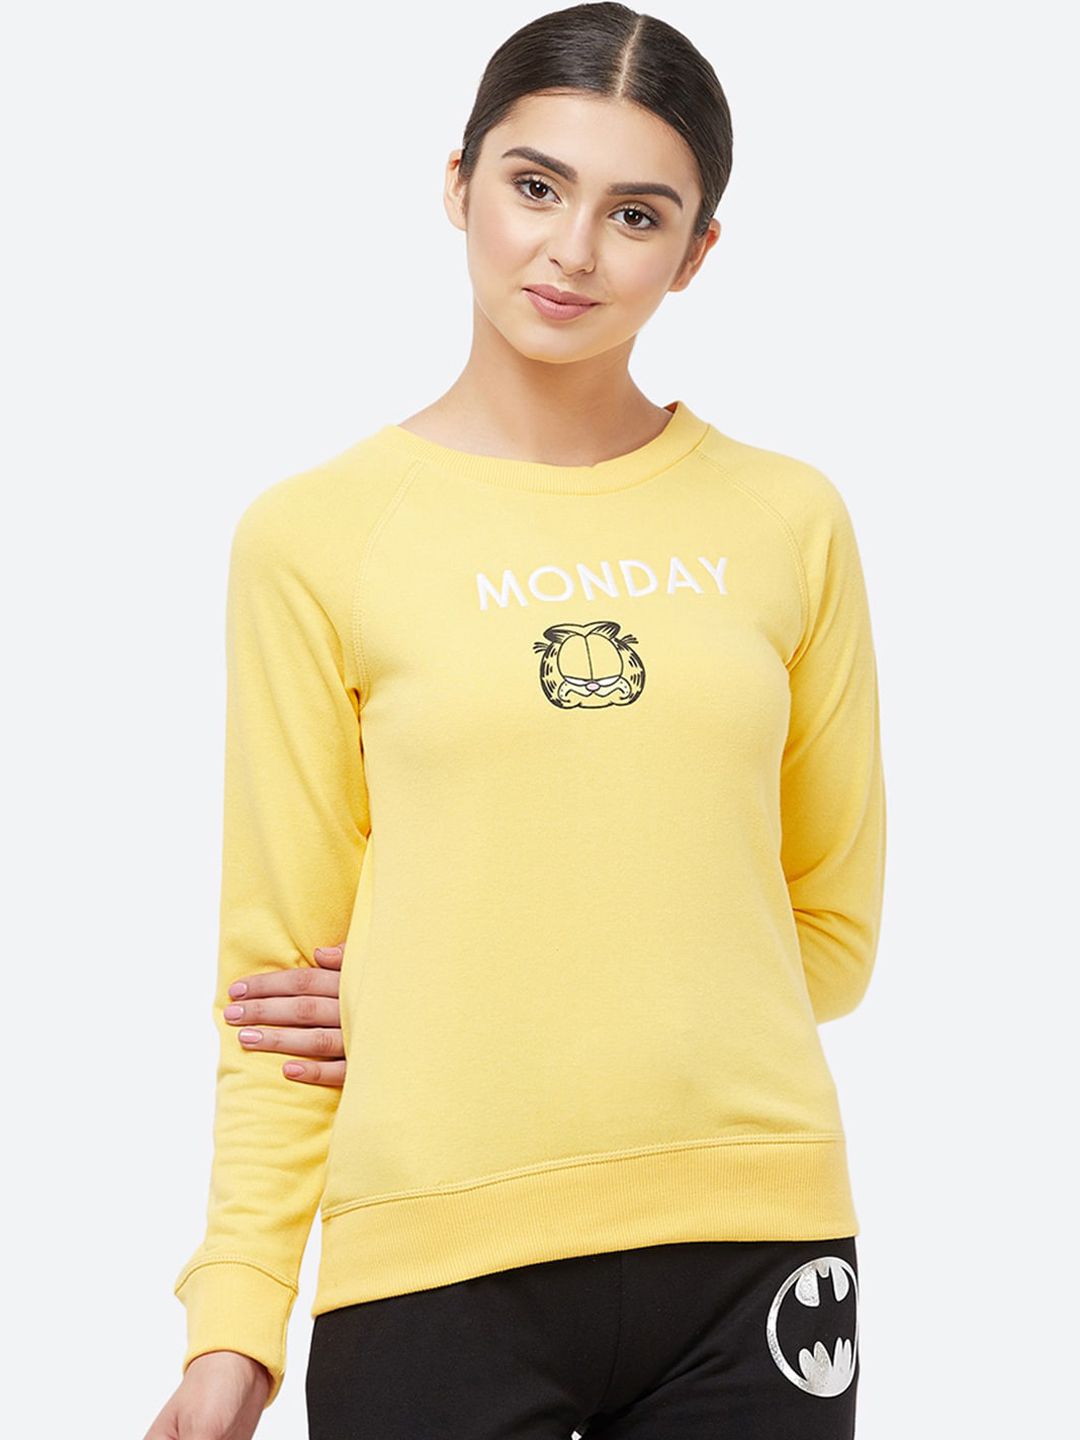 Free Authority Women Yellow Garfield Printed Sweatshirt Price in India